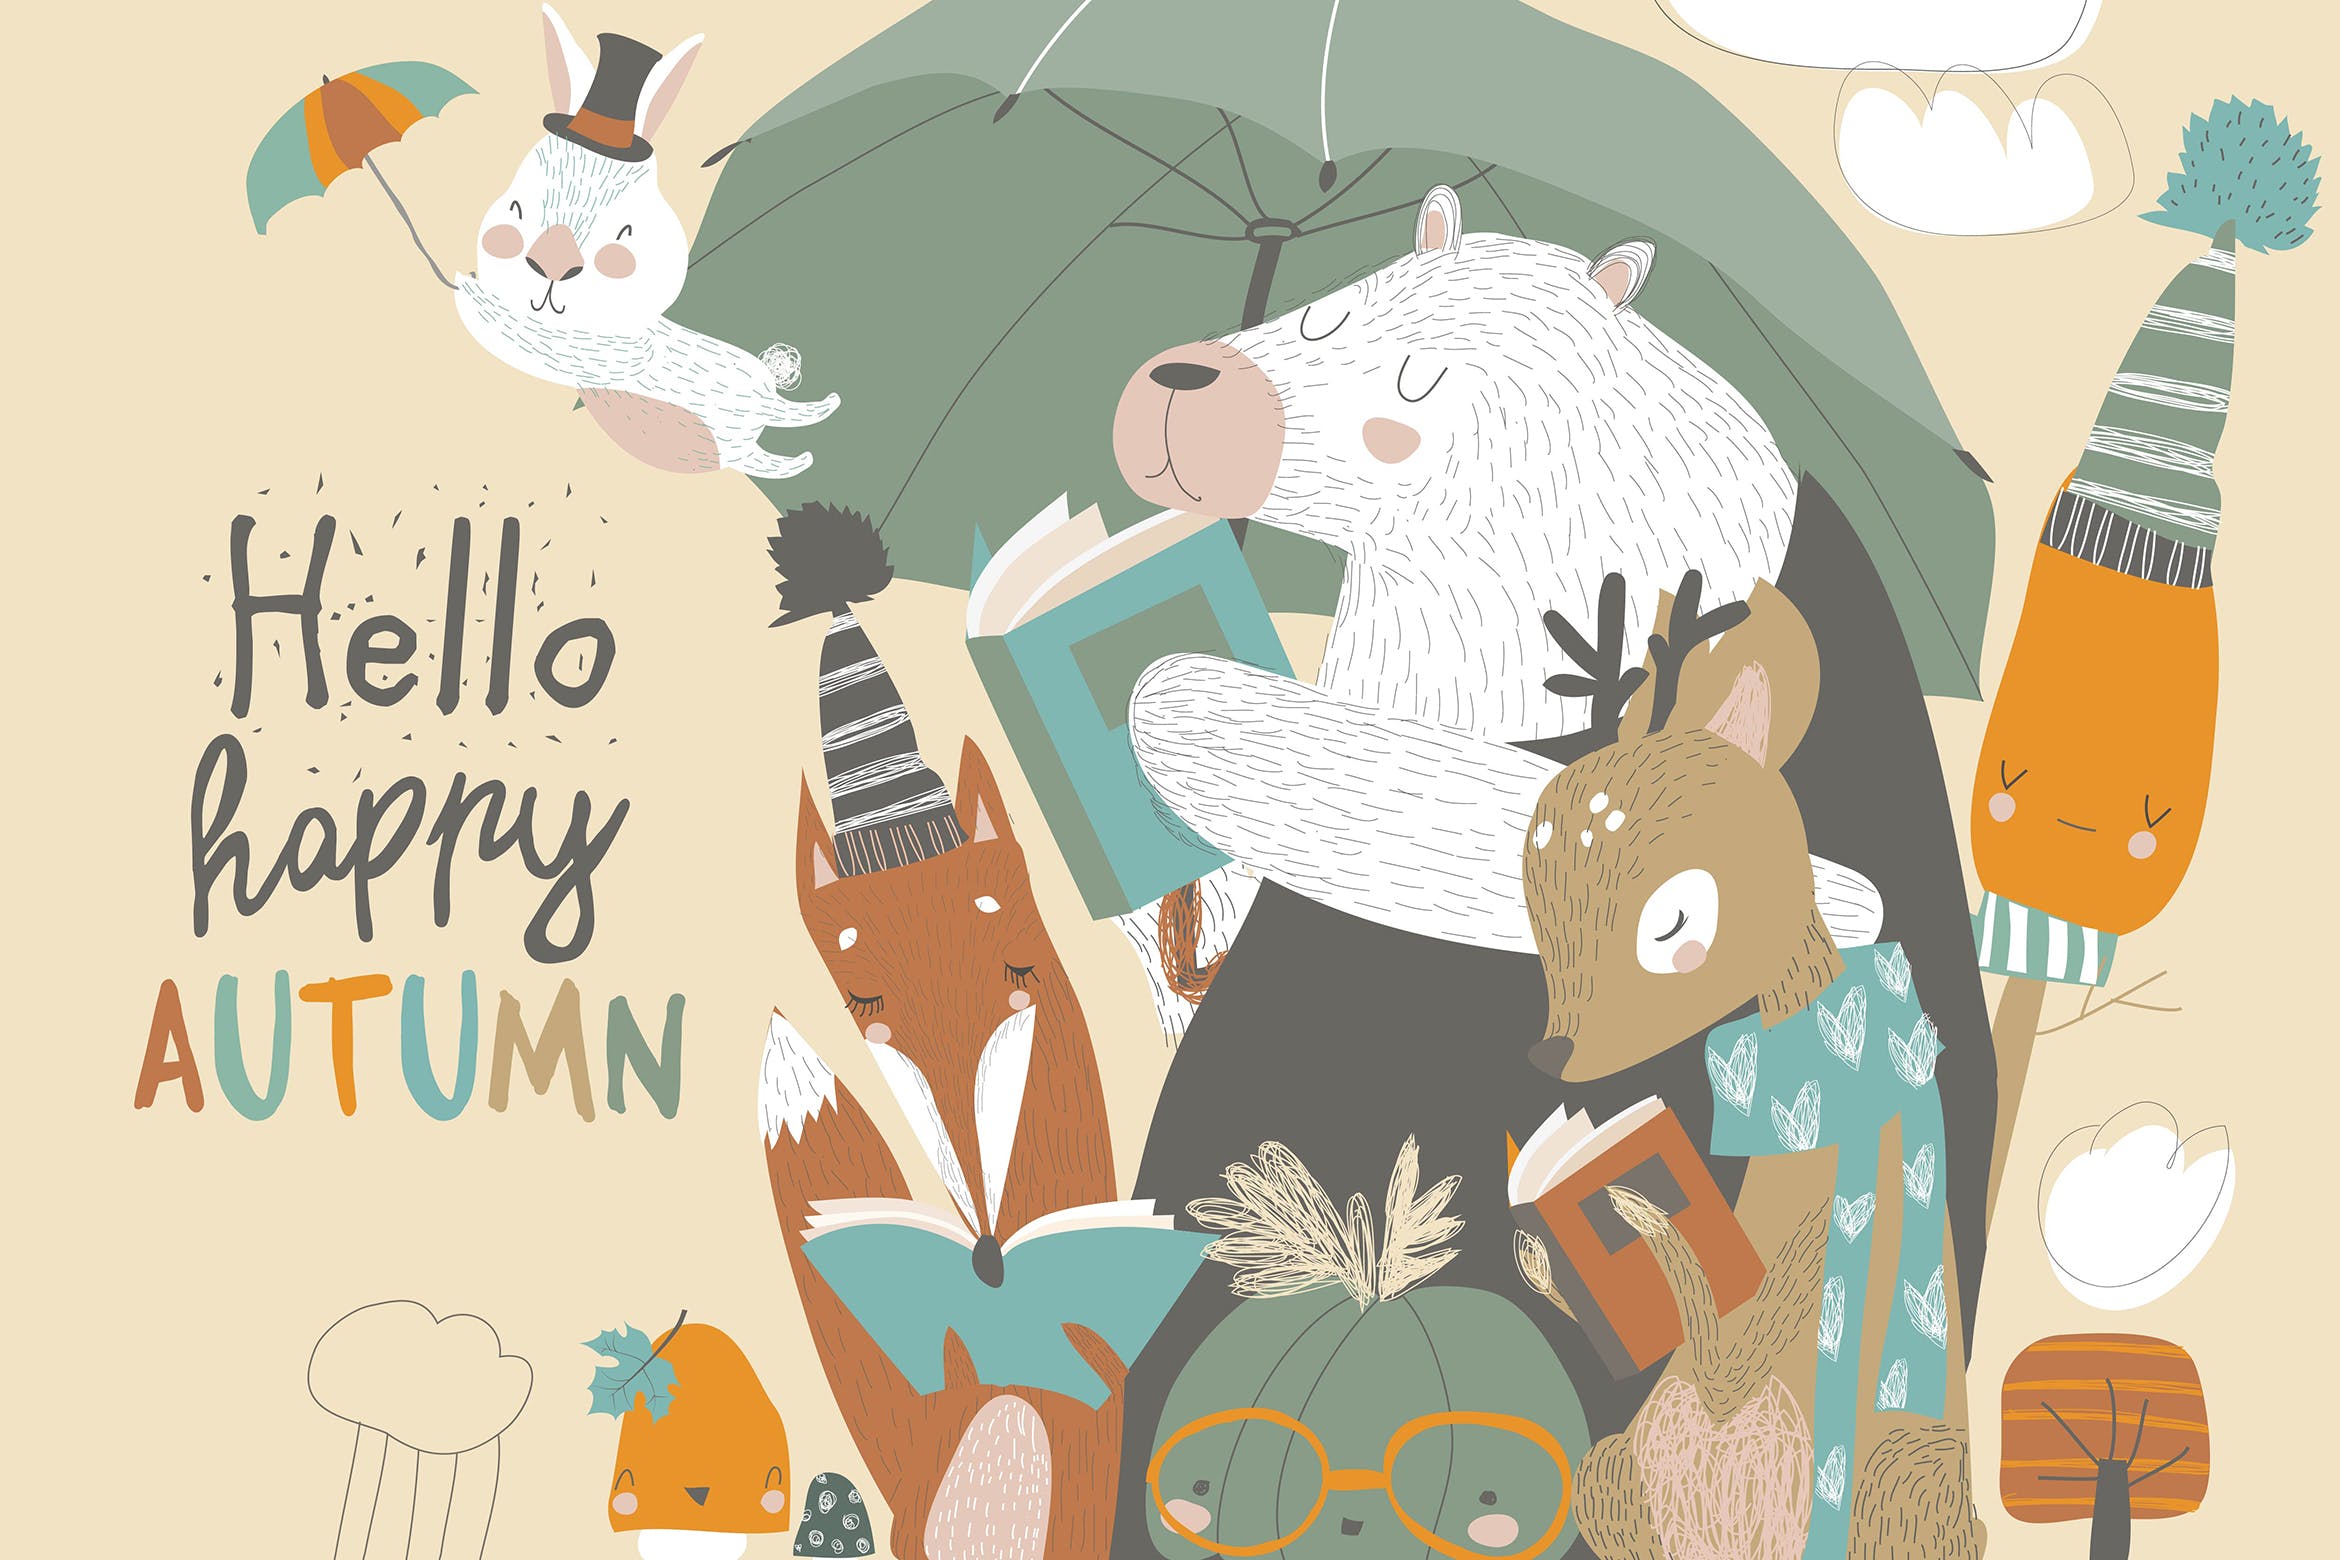 可爱的动物阅读场景16设计网精选手绘插画矢量素材 Funny animals read books under umbrella. Autumn ti插图